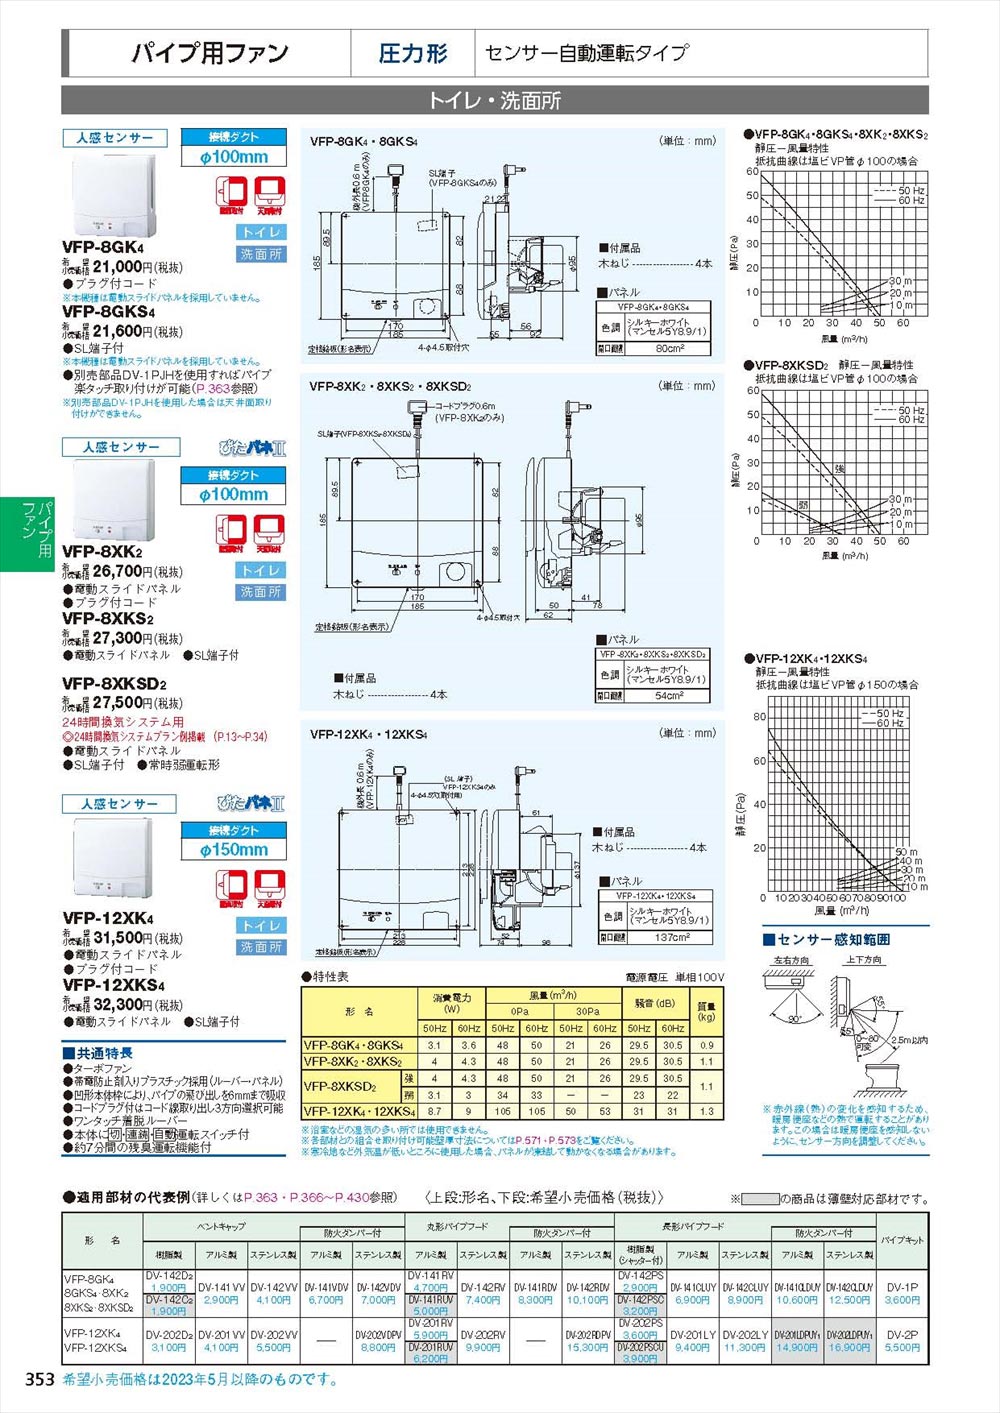 東芝 TOSHIBA パイプ用ファン VFP-12XSY4 - 4